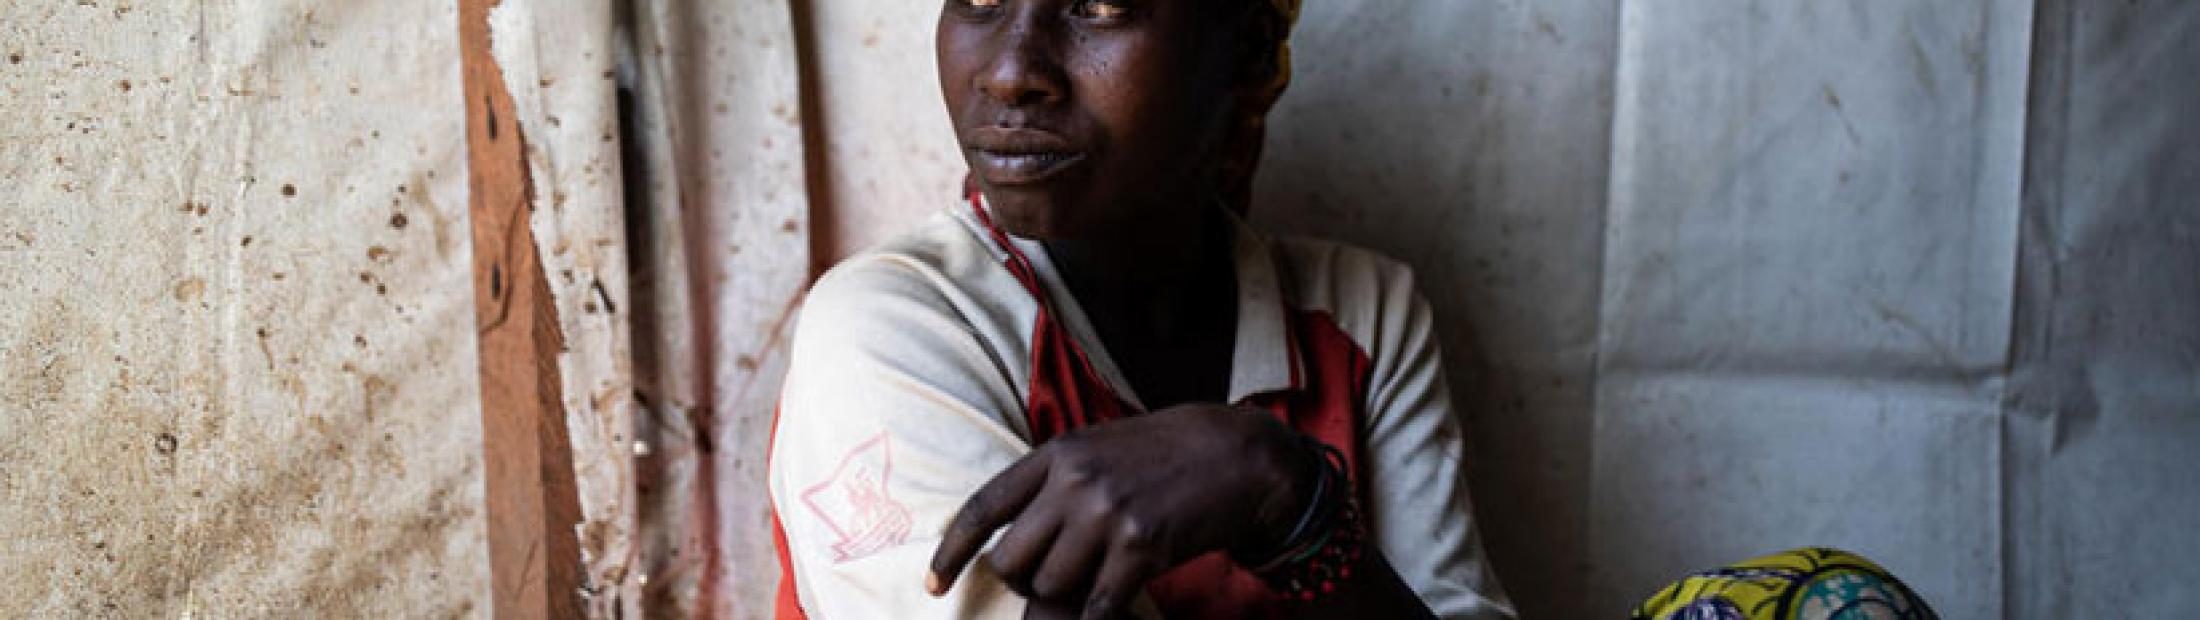 Los riesgos para las mujeres en RD. Congo